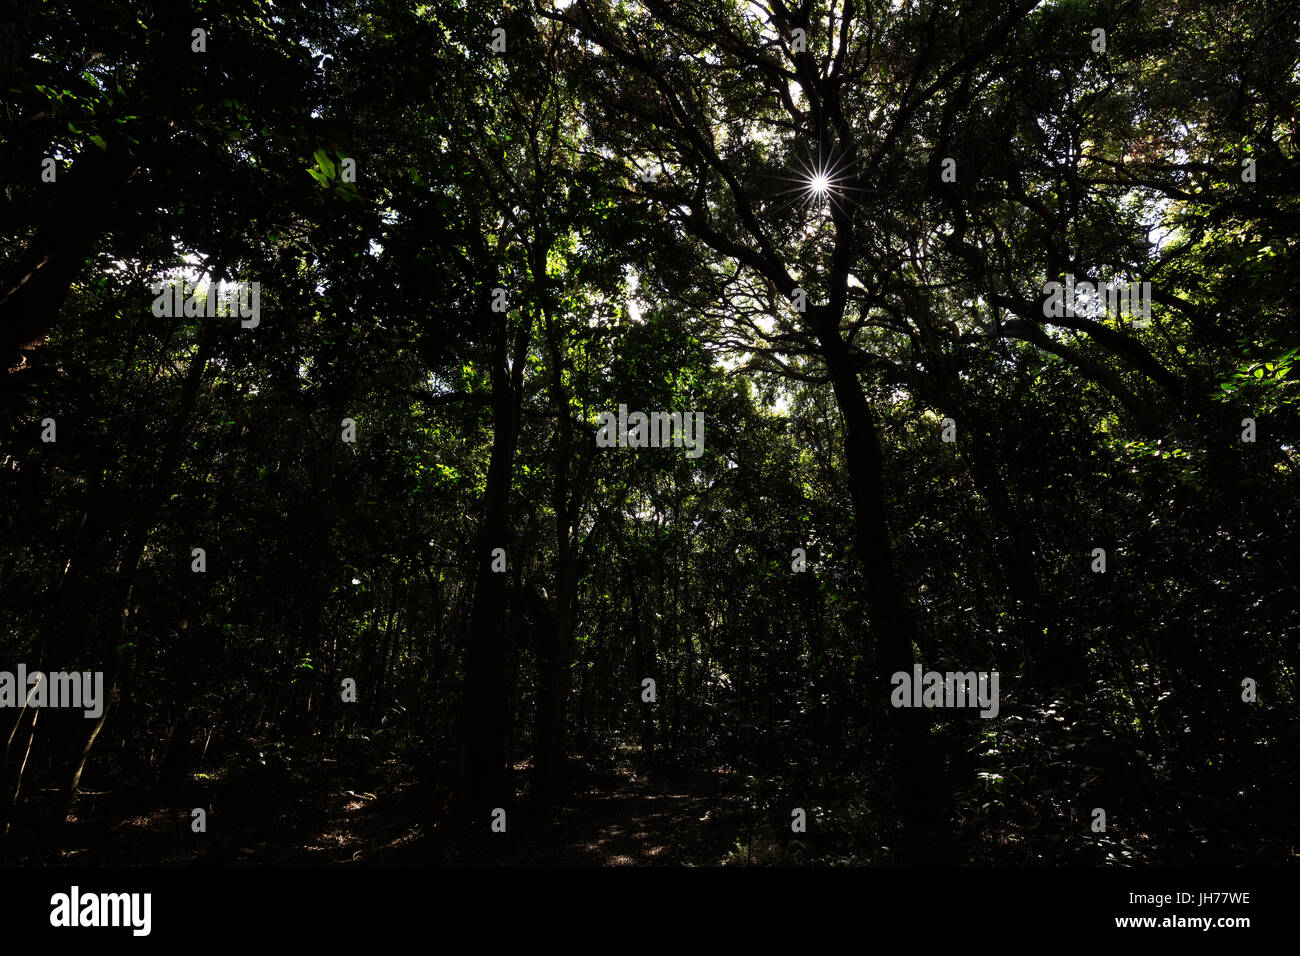 Le soleil brille à travers la cime des arbres dans une jungle sombre avec des immenses arbres. Banque D'Images